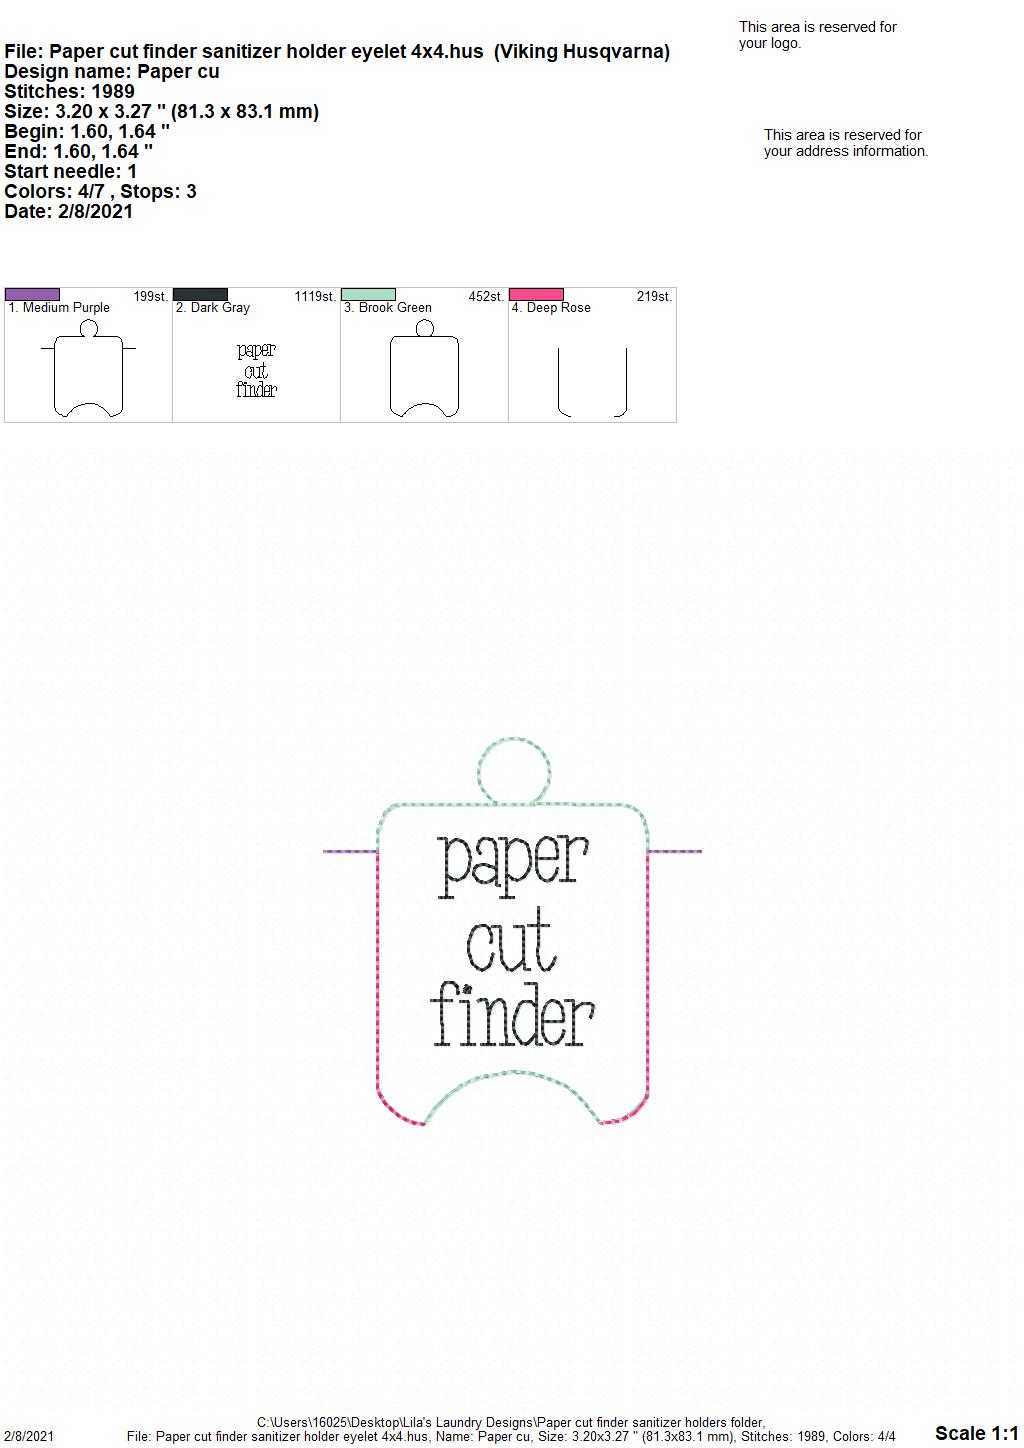 Paper Cut Finder Sanitizer Holders - DIGITAL Embroidery DESIGN